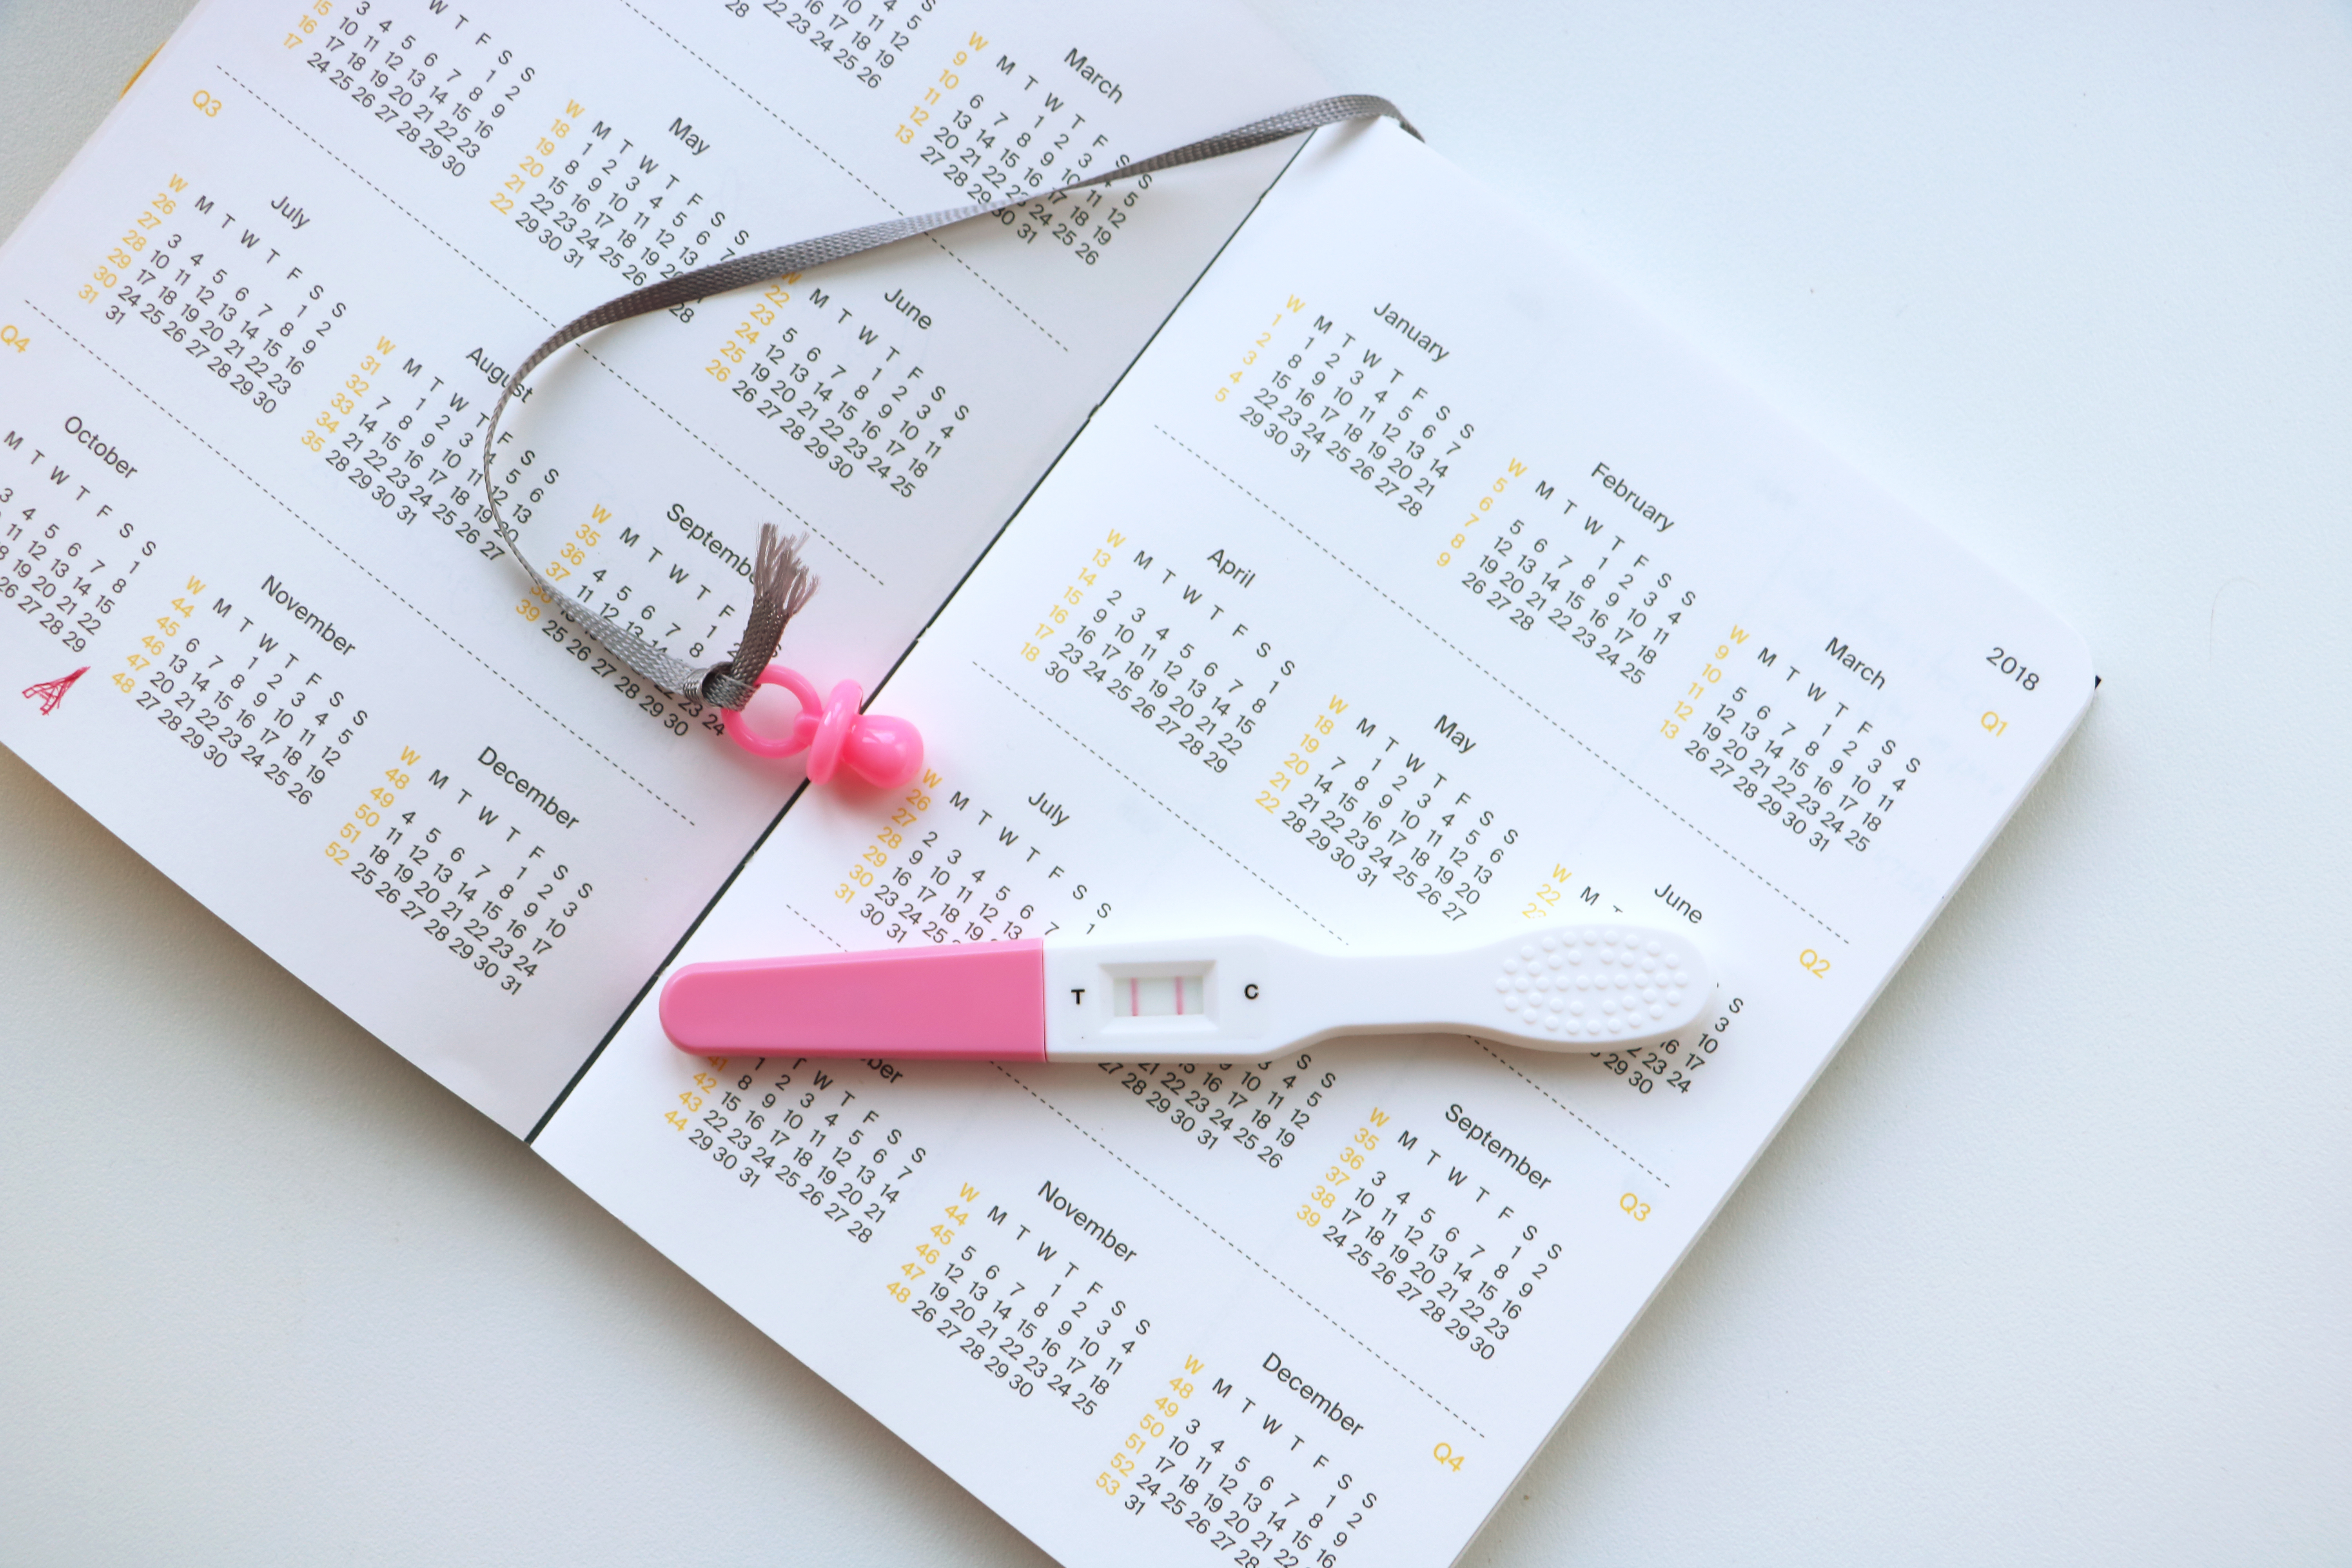 15 Pregnancy Due Date Calculators